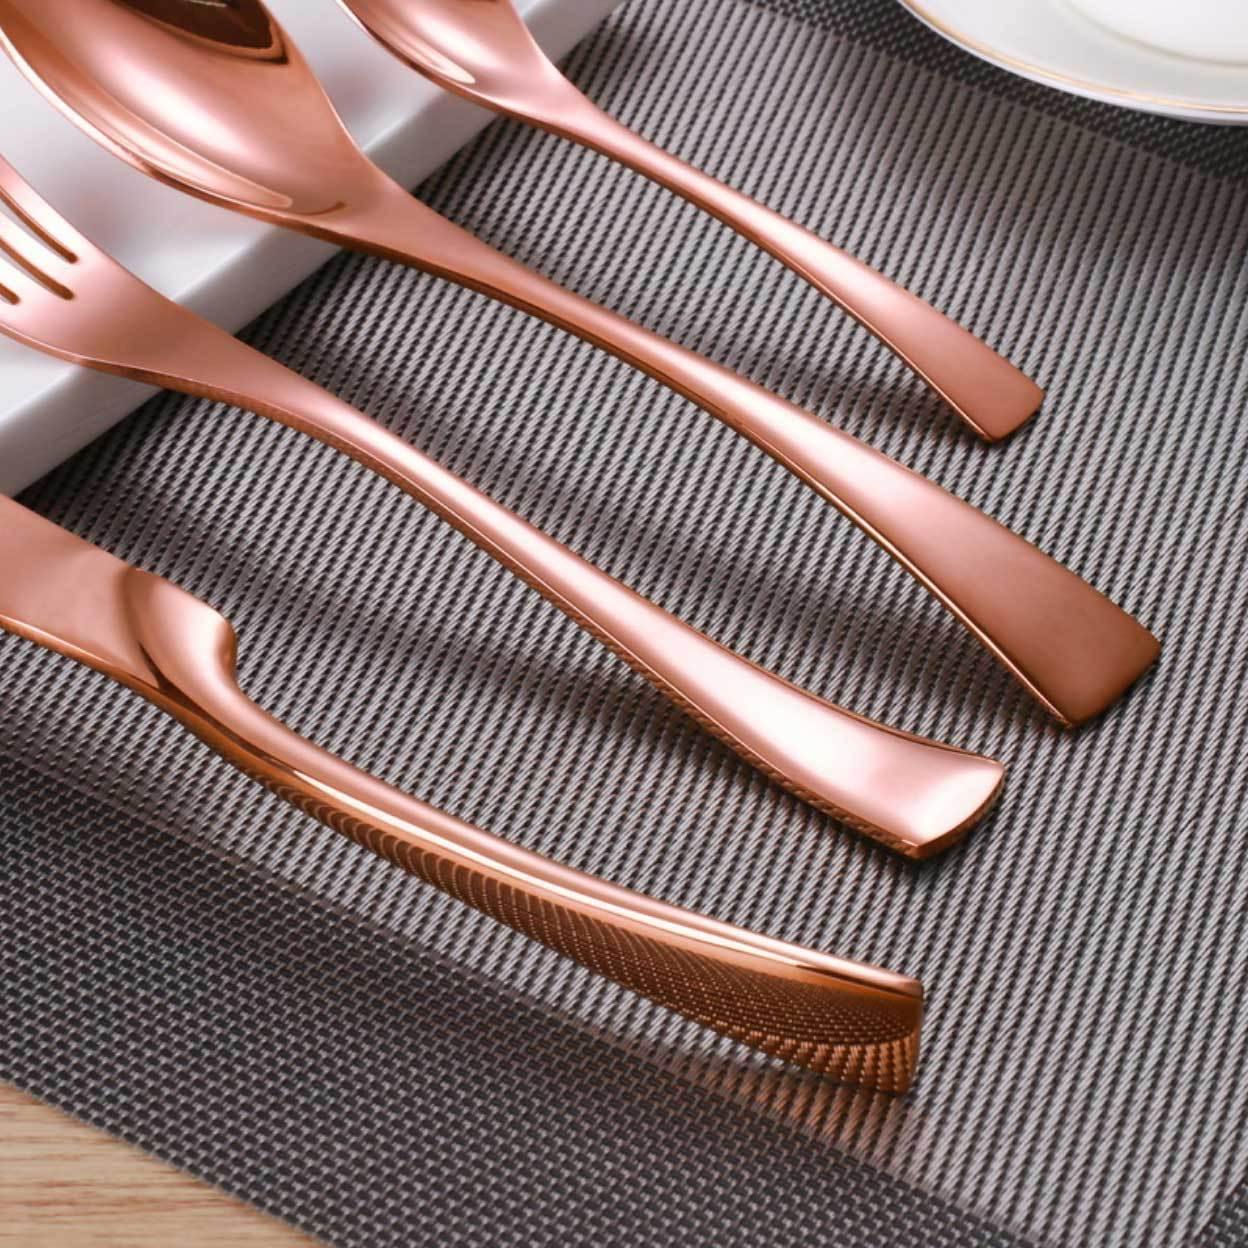 Rose Gold Slim Metal Cutlery Set - Nordic Side - 